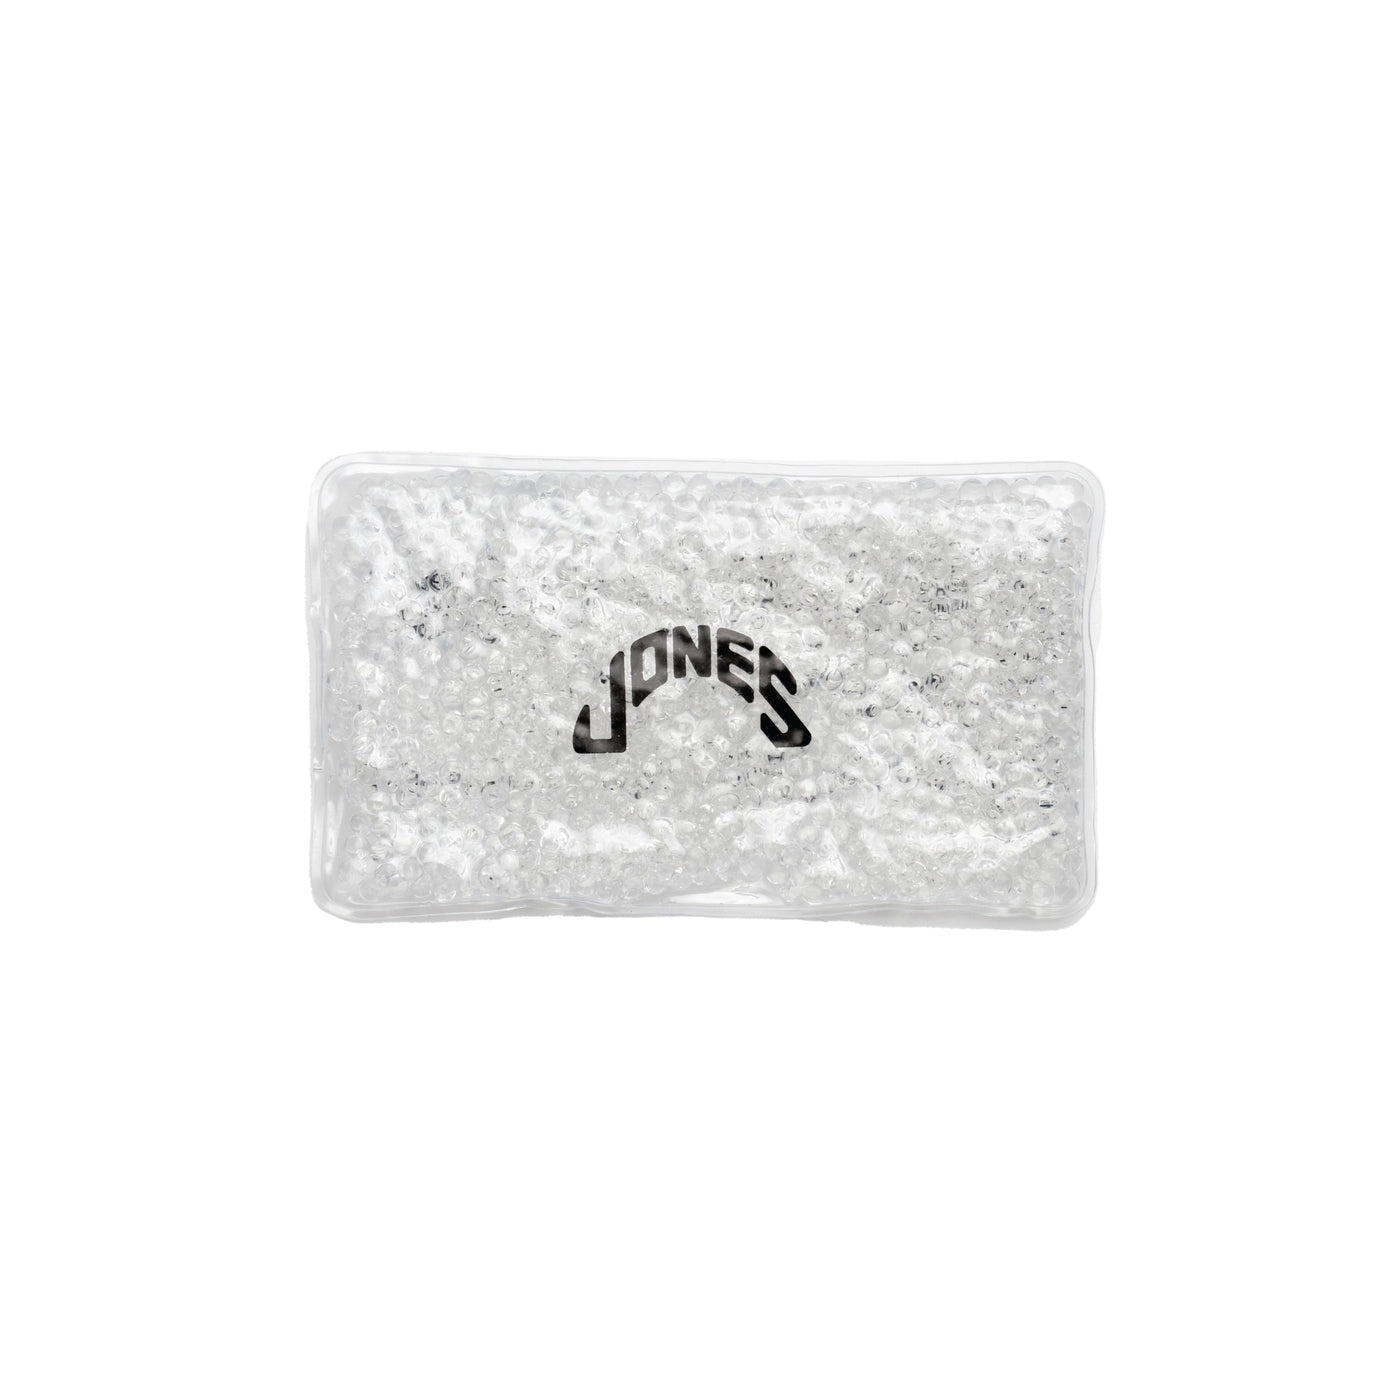 Jones Gel Bead Cold Pack - Clear